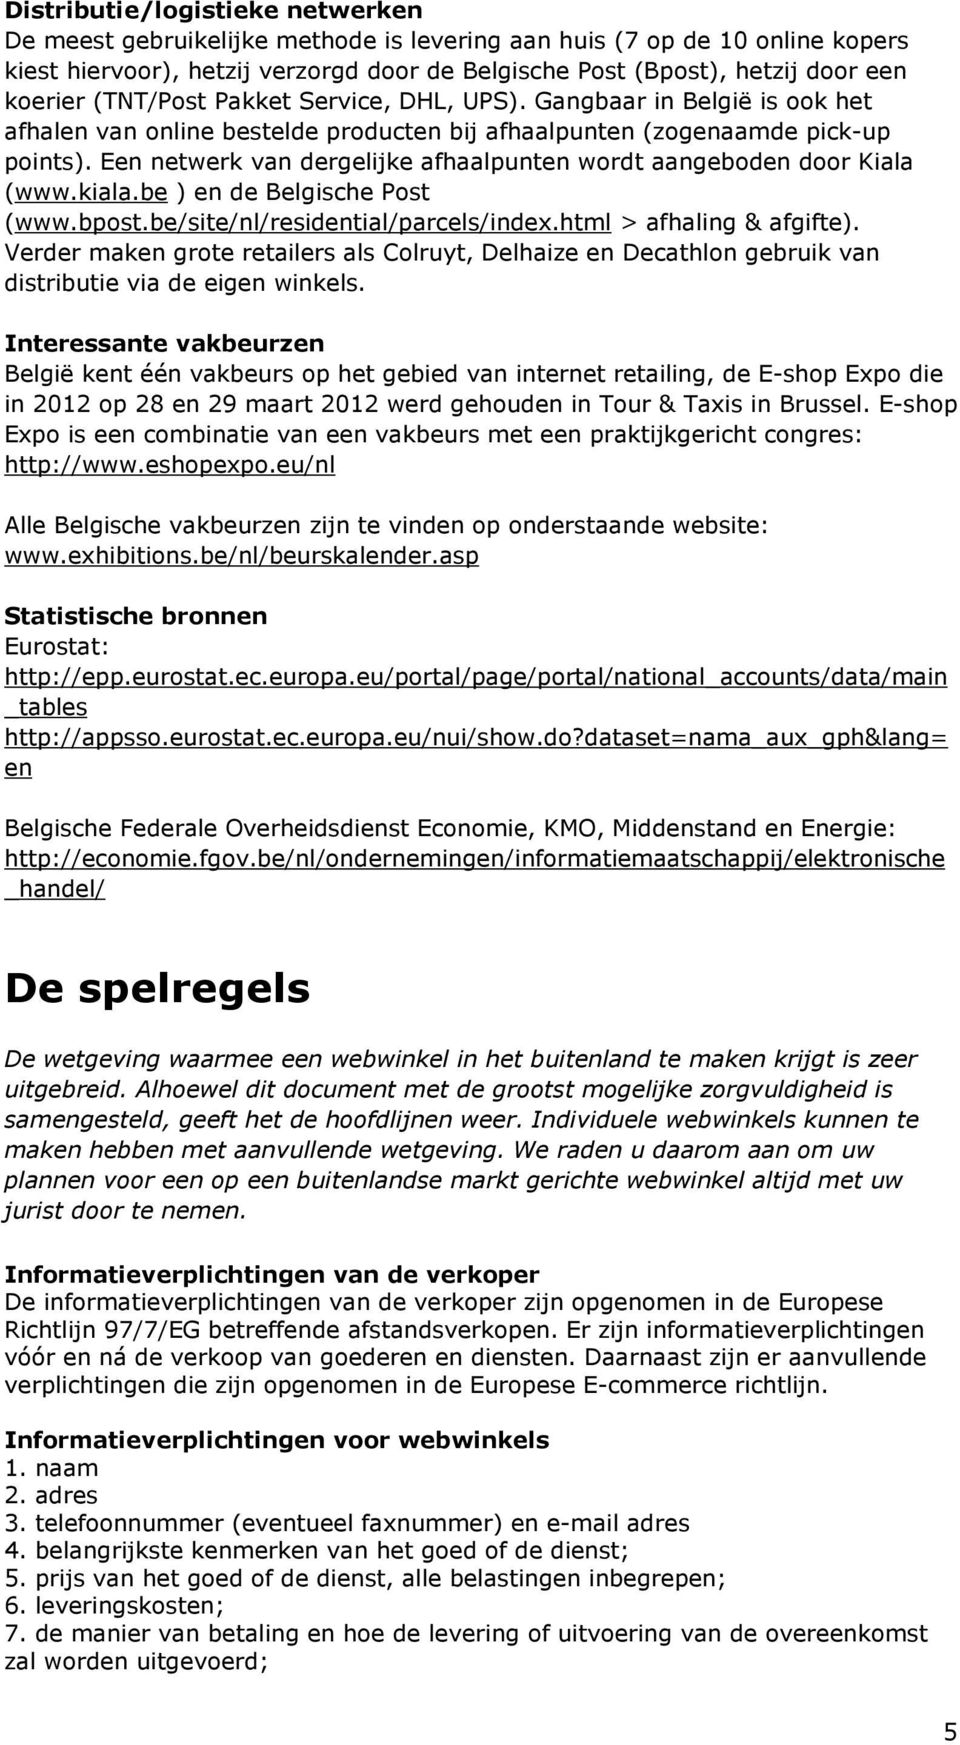 Een netwerk van dergelijke afhaalpunten wordt aangeboden door Kiala (www.kiala.be ) en de Belgische Post (www.bpost.be/site/nl/residential/parcels/index.html > afhaling & afgifte).